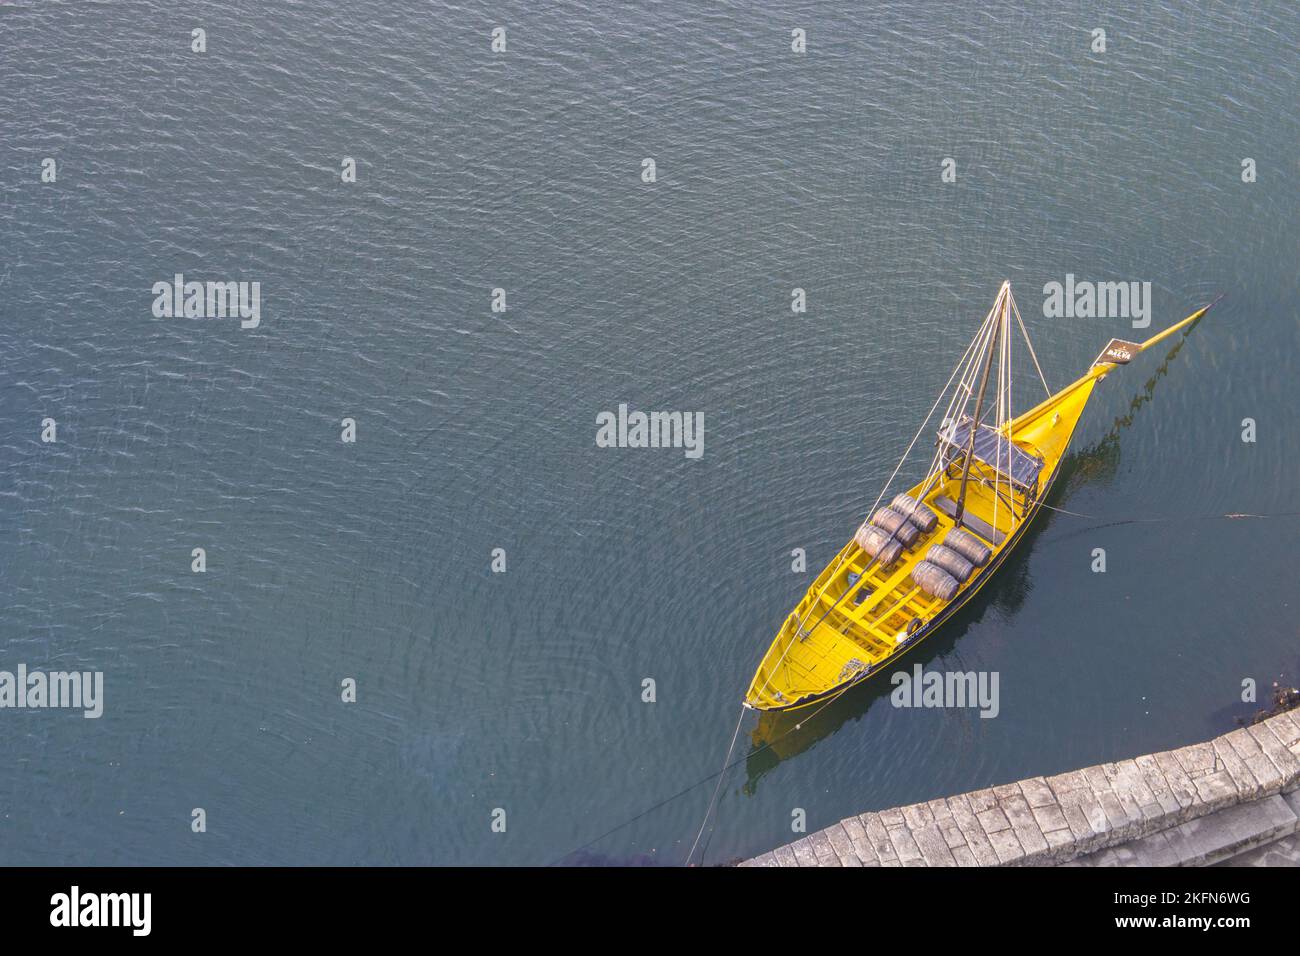 Bateau jaune sur fond noir et blanc. Bateau jaune avec vue sur les fûts de vin. Vue aérienne du bateau sur le dessus de l'eau. Bateau en bois jaune à Porto Banque D'Images